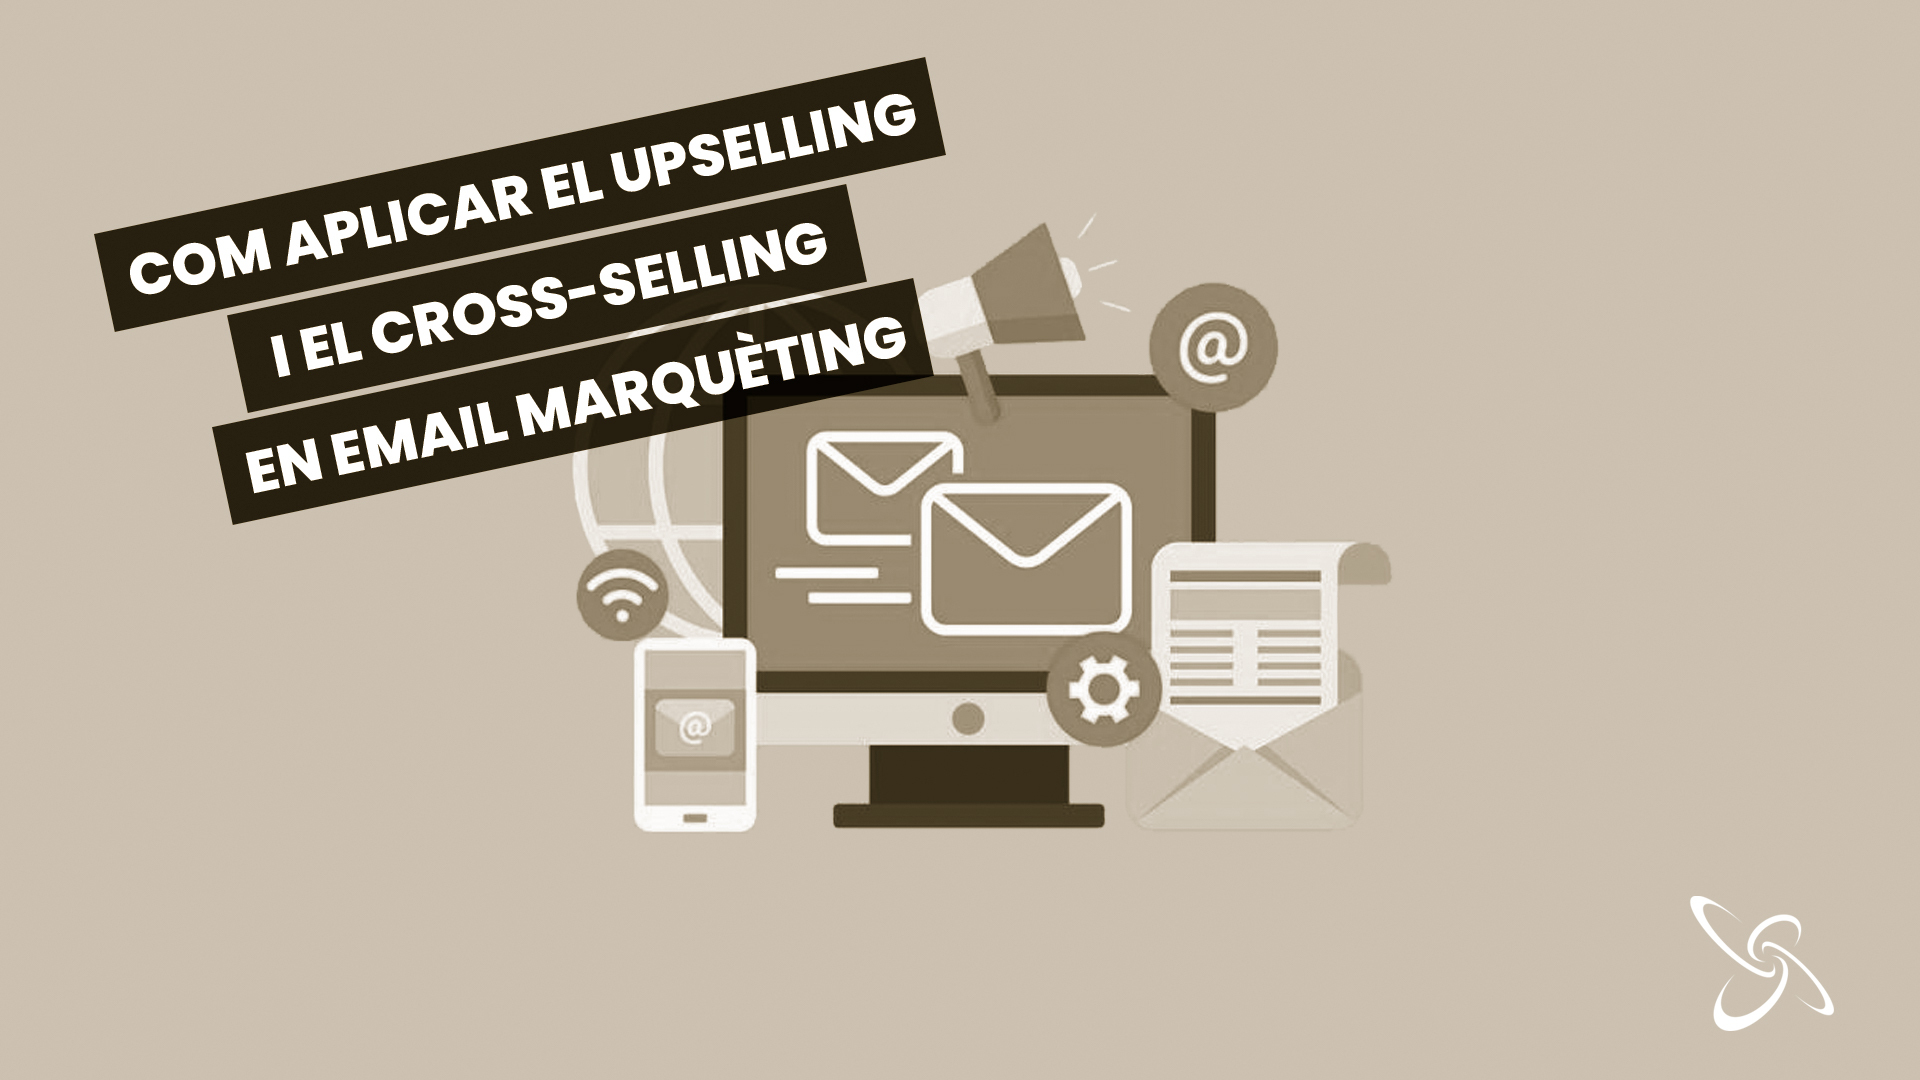 com aplicar el upselling i el cross-selling en email màrqueting